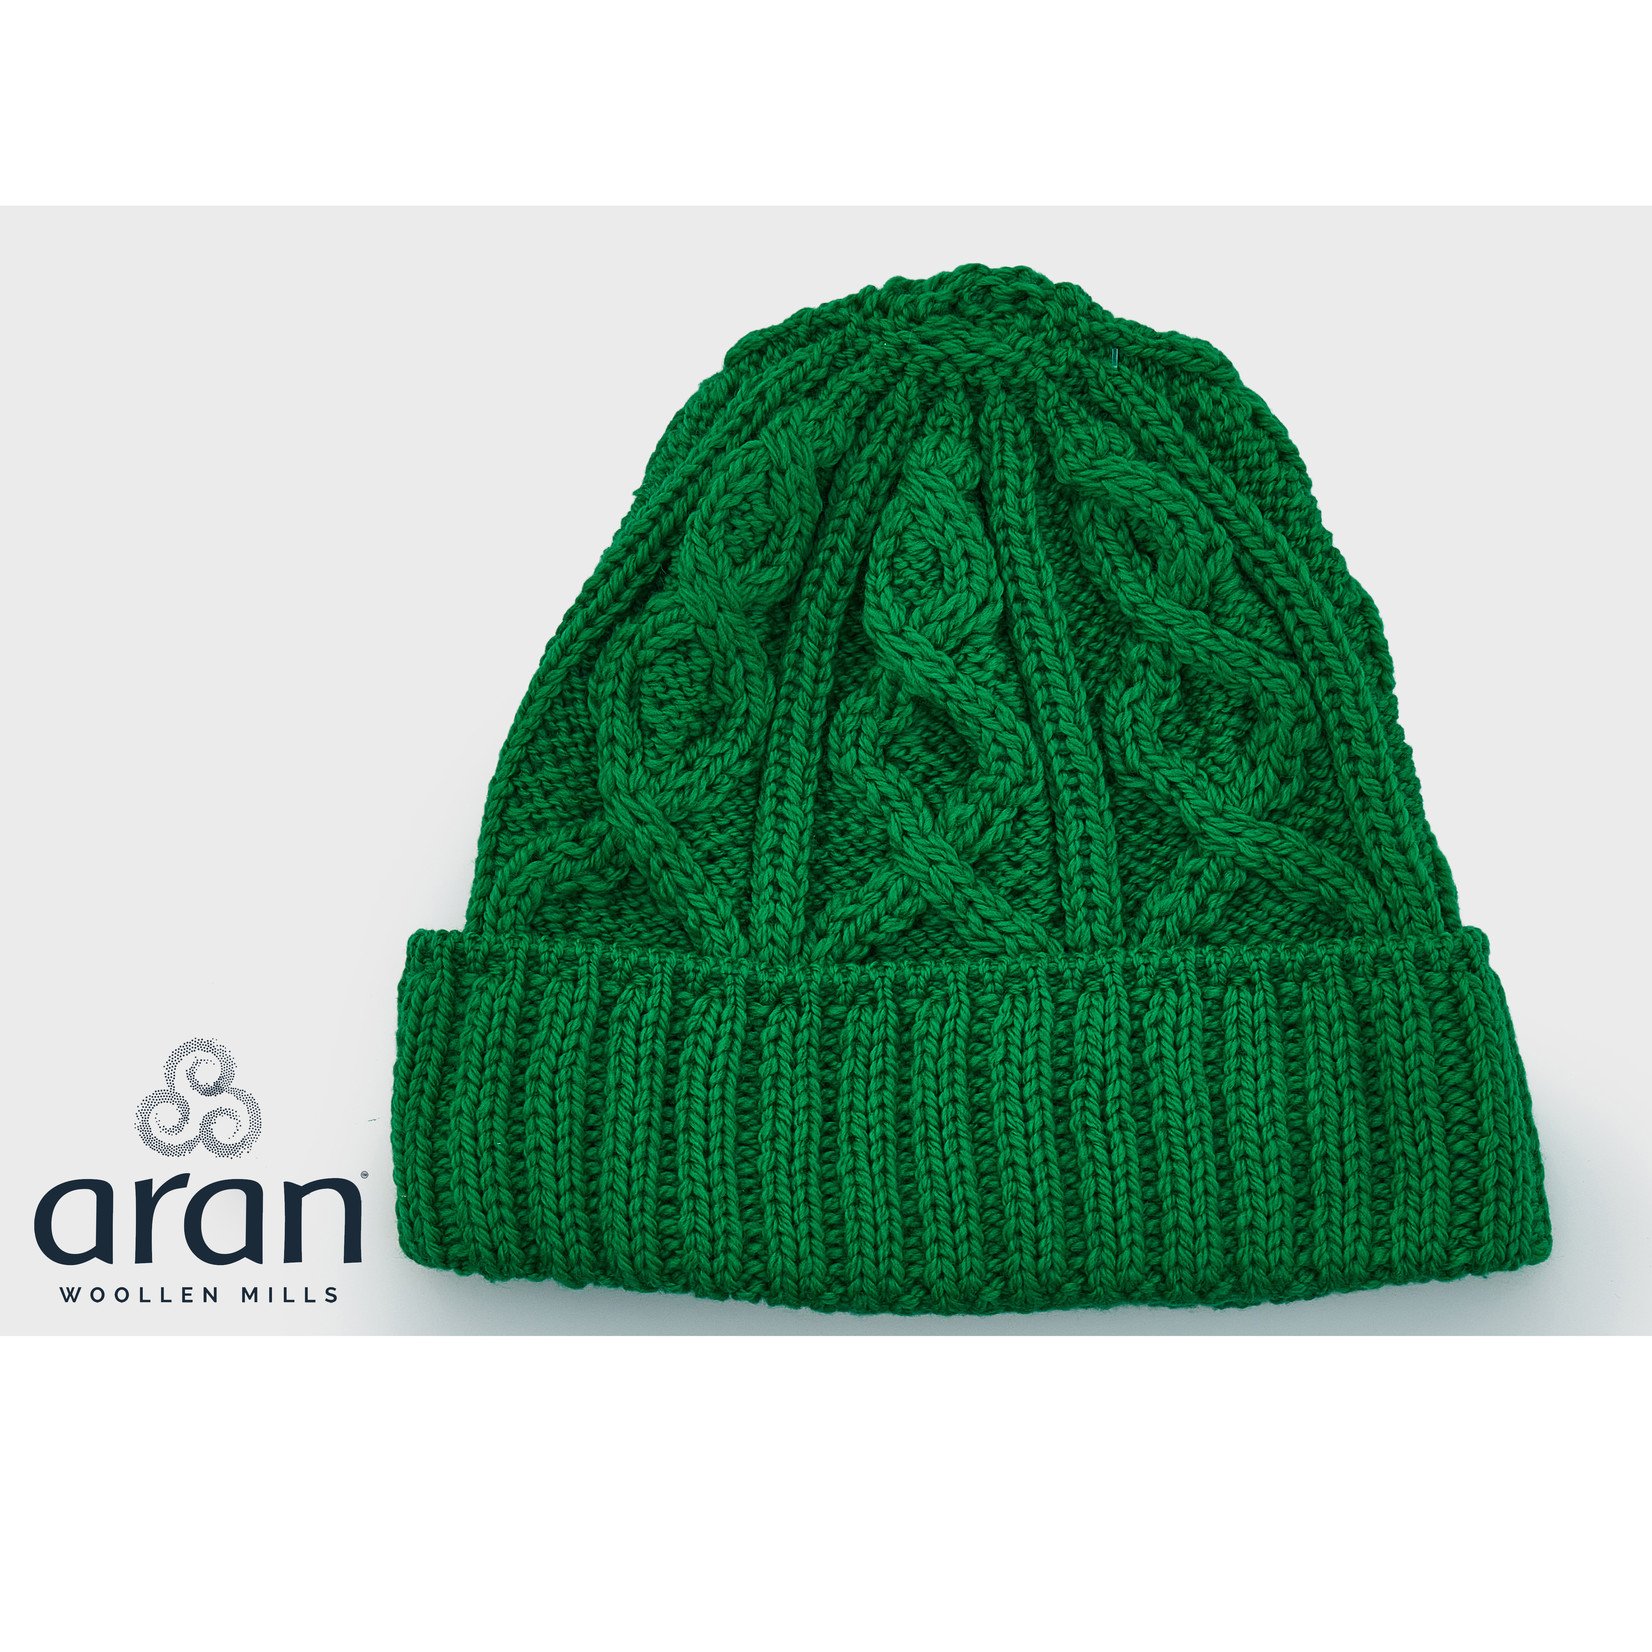 Aran Woollen Mills Aran Diamond Hat: Kelly Green